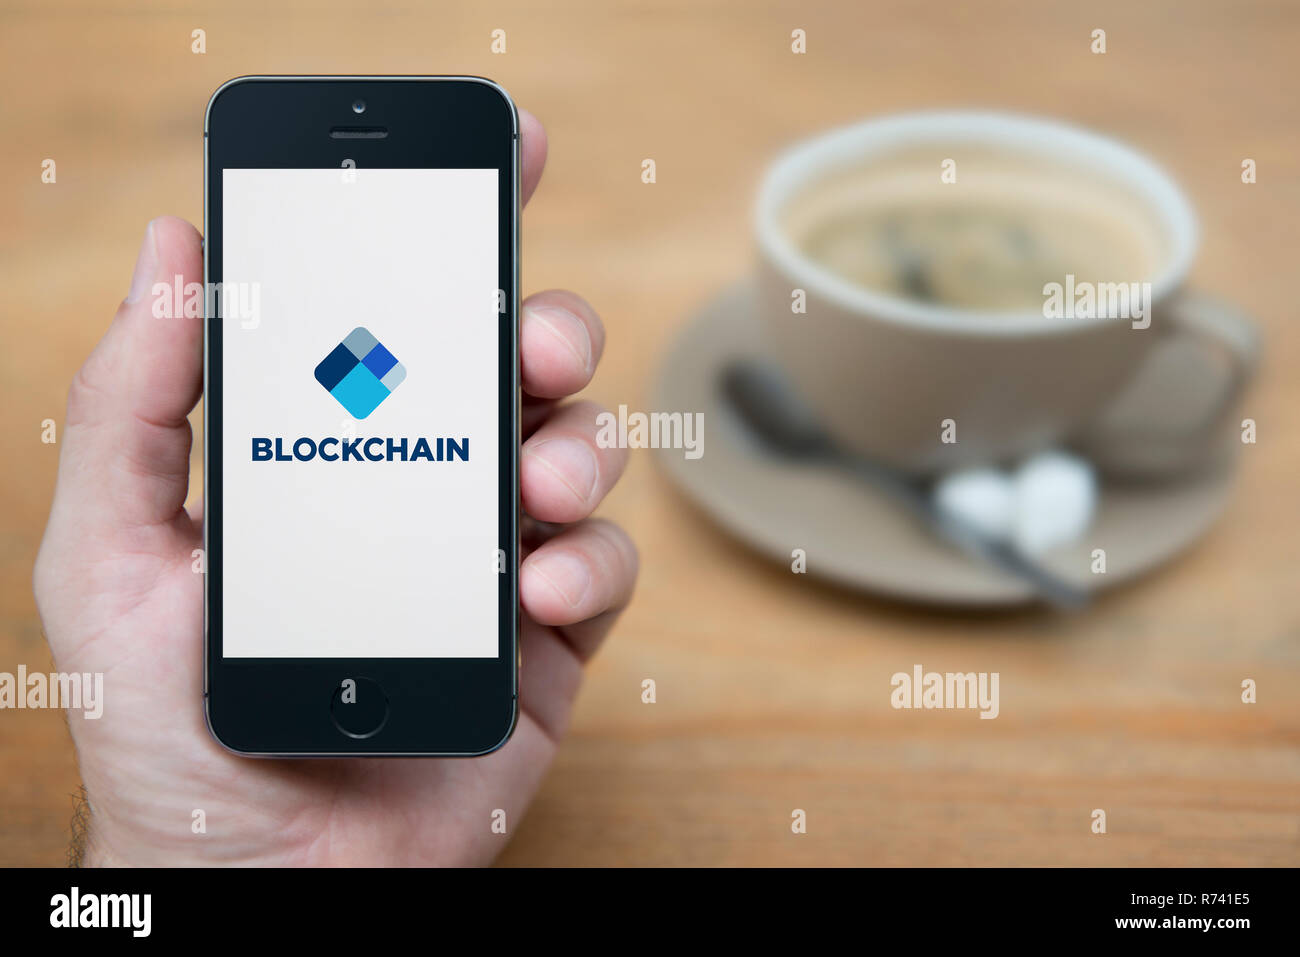 Un uomo guarda al suo iPhone che visualizza il logo Blockchain (solo uso editoriale). Foto Stock